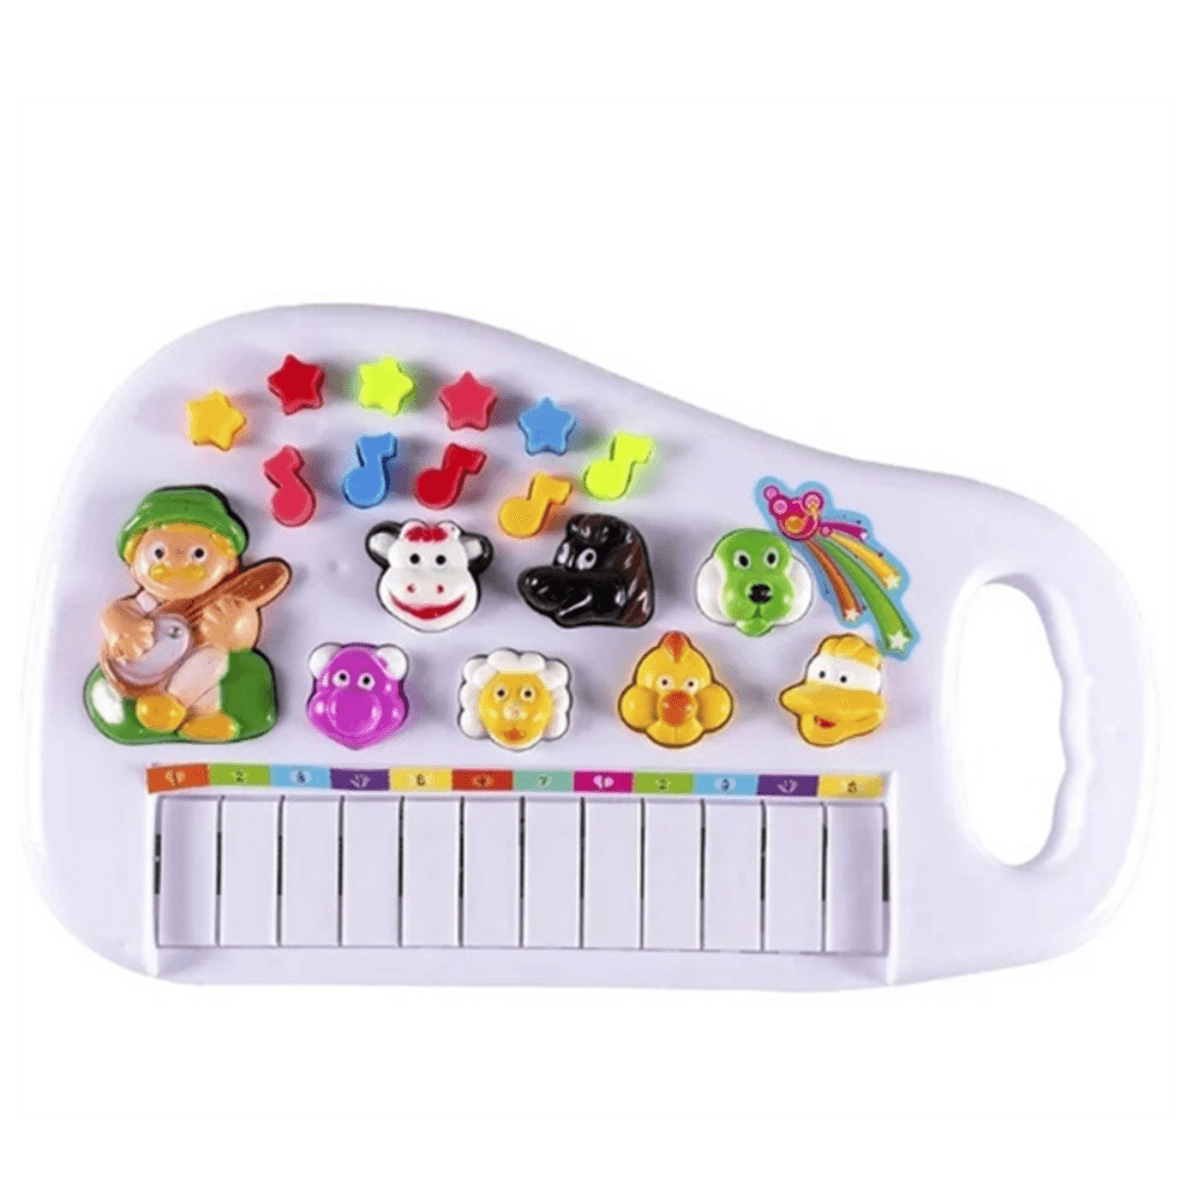 Piano Teclado Musical Bichos Fazendinha Infantil Eletronico